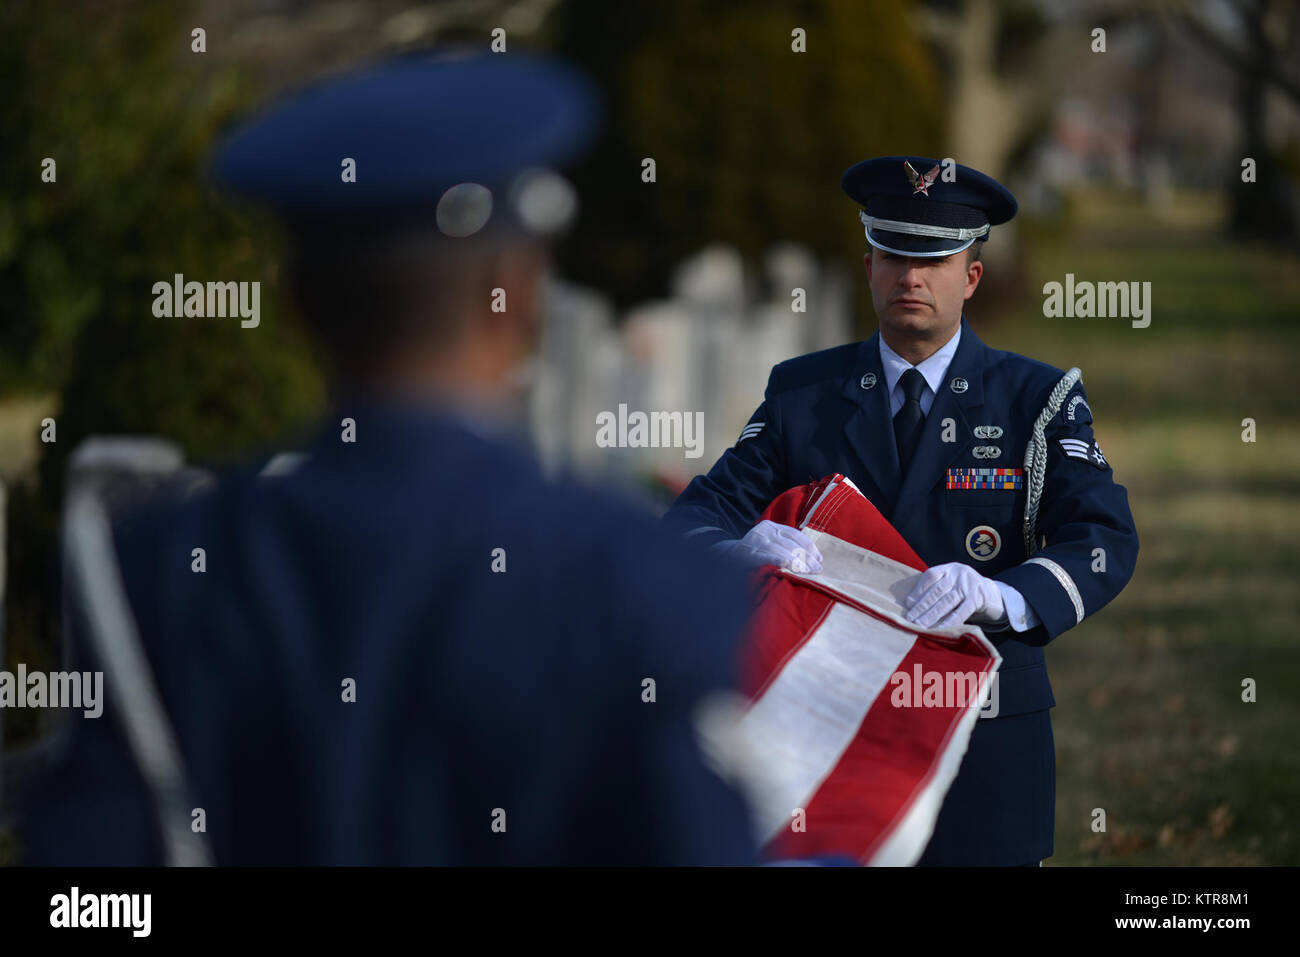 QUEENS, NY - Älterer Flieger Corey Smith und Dominic Surinaga eine Flagge falten Zeremonie auf der Beerdigung durchführen für Master Sgt. Timotyh David Ryan an der St. John's Cemetery in Queens, New York, am 16. Dezember 2016. Zusätzlich zu anderen zeremoniellen Aufgaben, Mitglieder der 106th Ehrengarde sind oft aufgerufen, Volle militärische Ehren für Begräbnisse Veteran's zur Verfügung zu stellen. (US Air National Guard/Staff Sgt. Christopher S. Muncy/freigegeben) Stockfoto